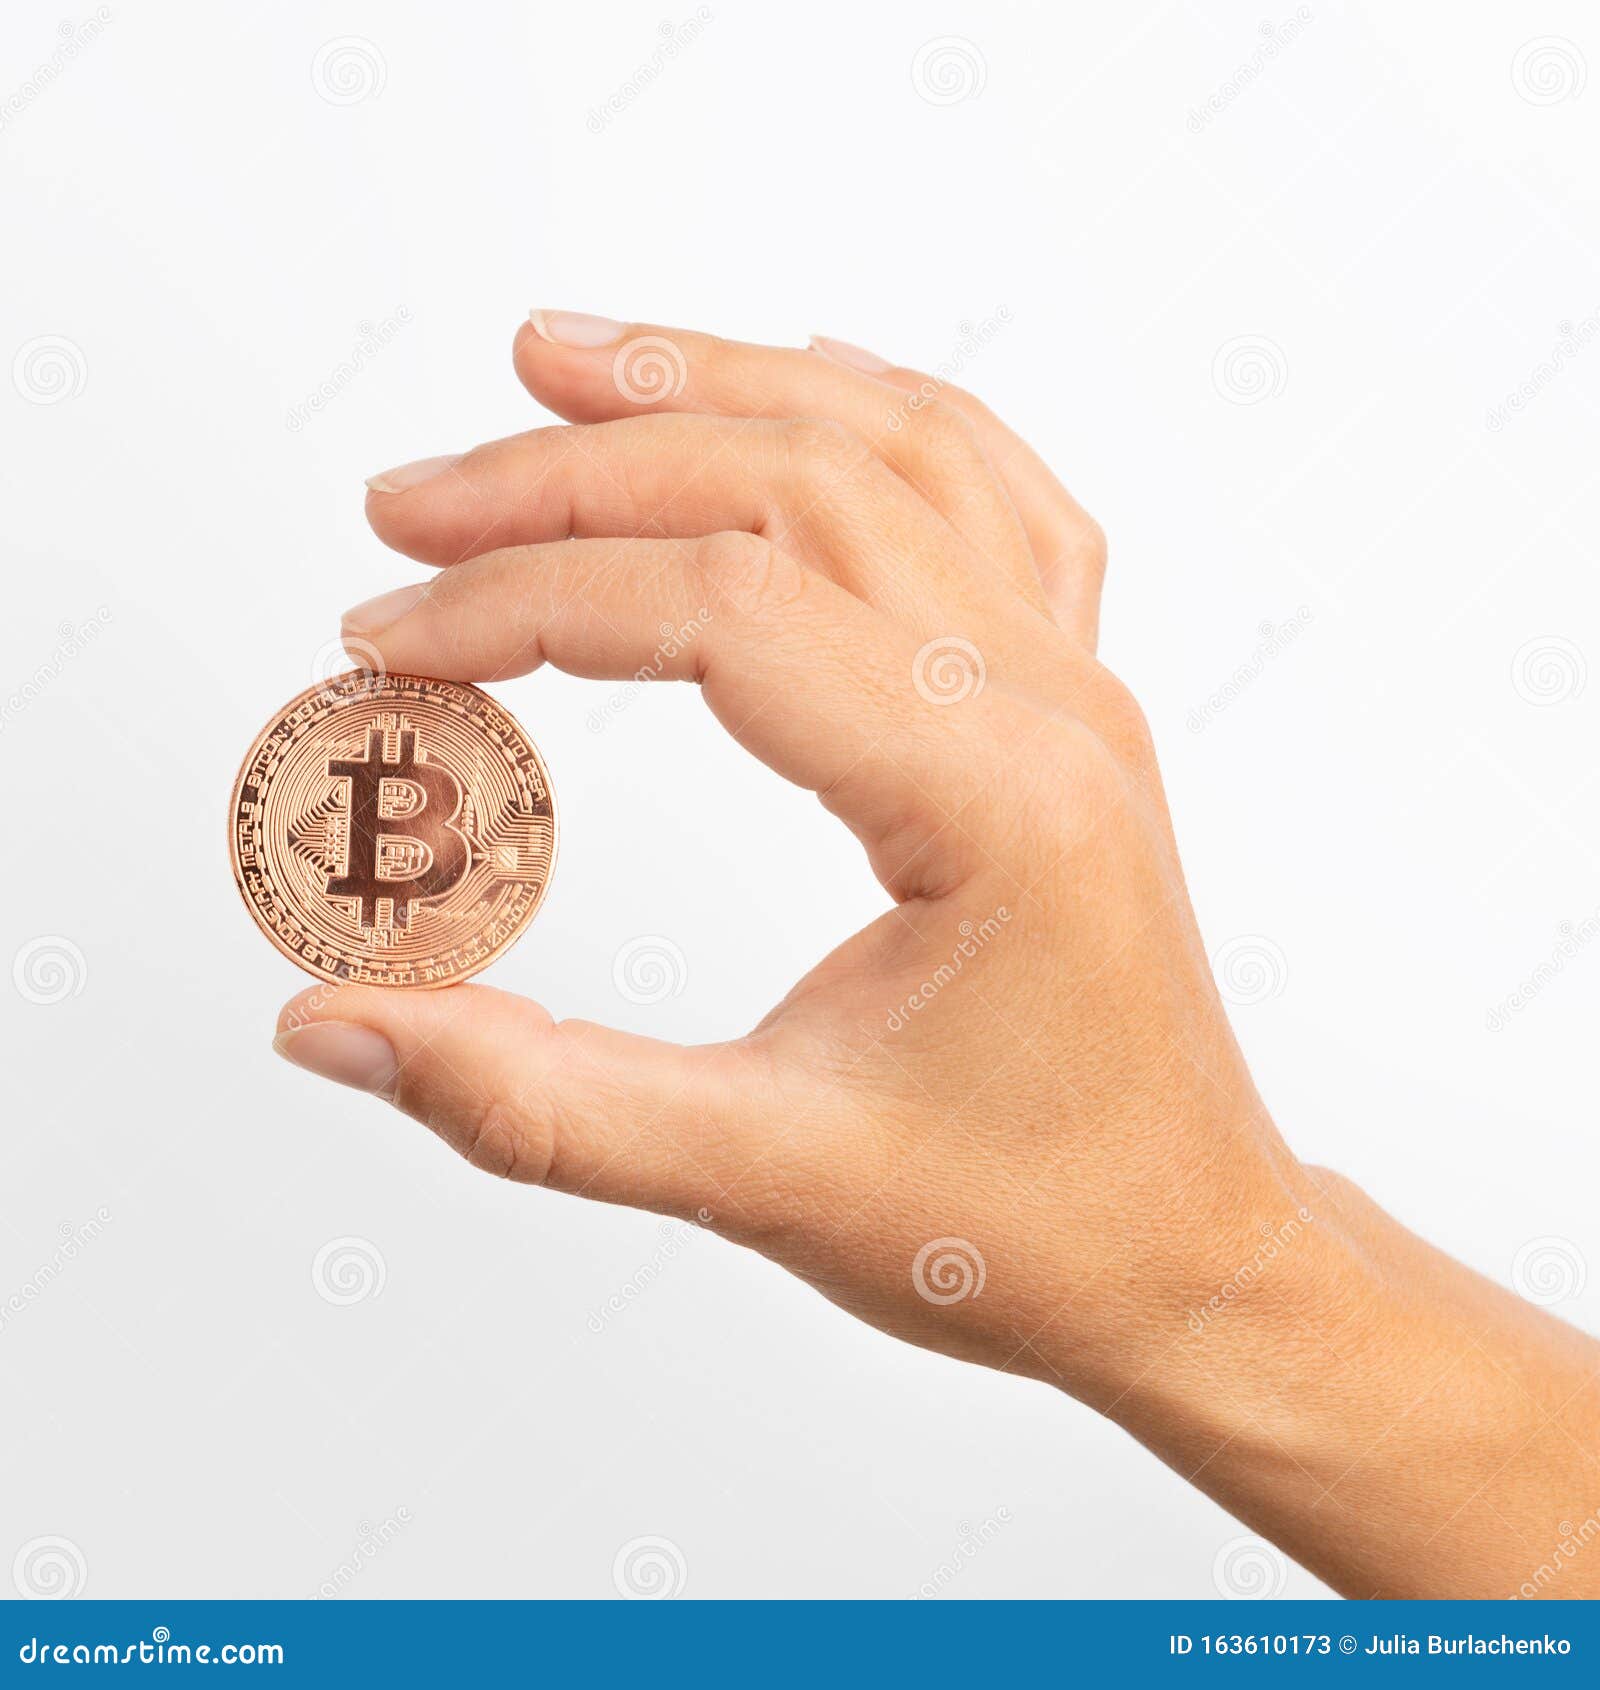 mi mellett kereskedik a bitcoin 5 dollárt fektet be bitcoinba